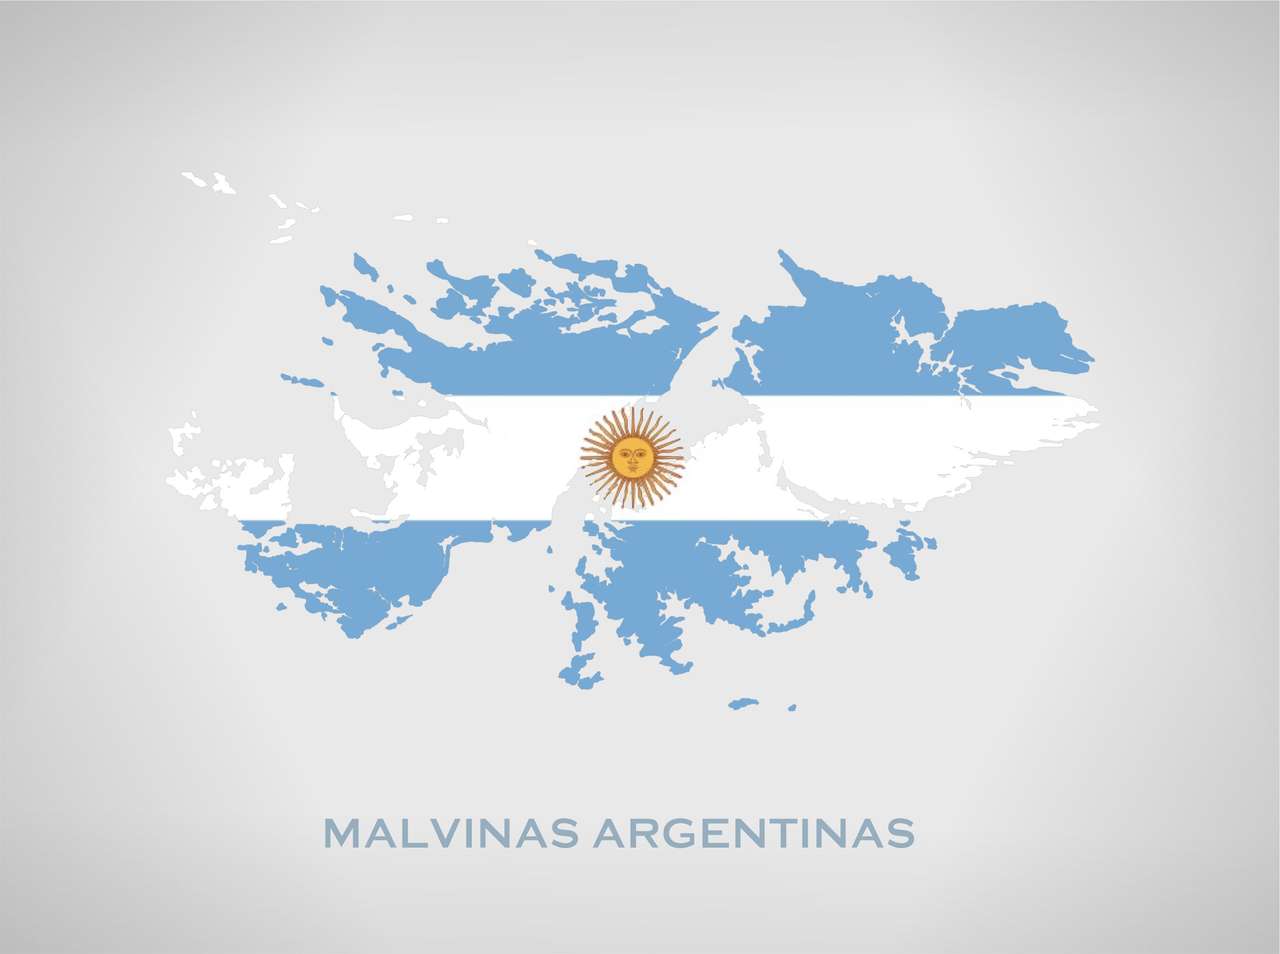 Falkland Islands online puzzle